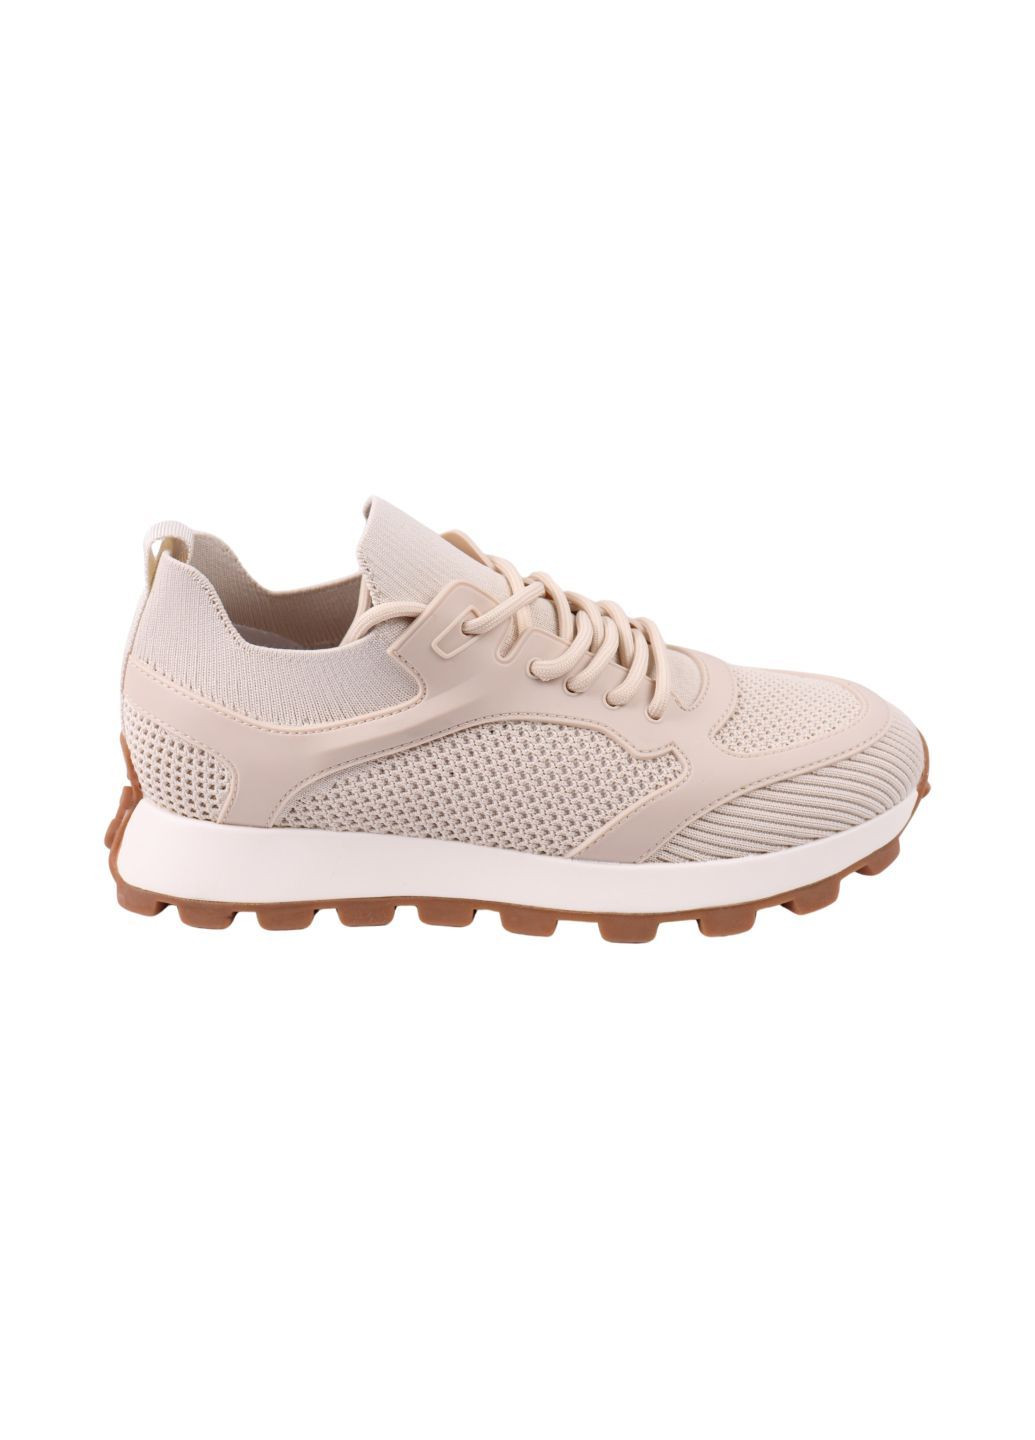 Білі кросівки чоловічі молочні текстиль Brooman 1004-24LK